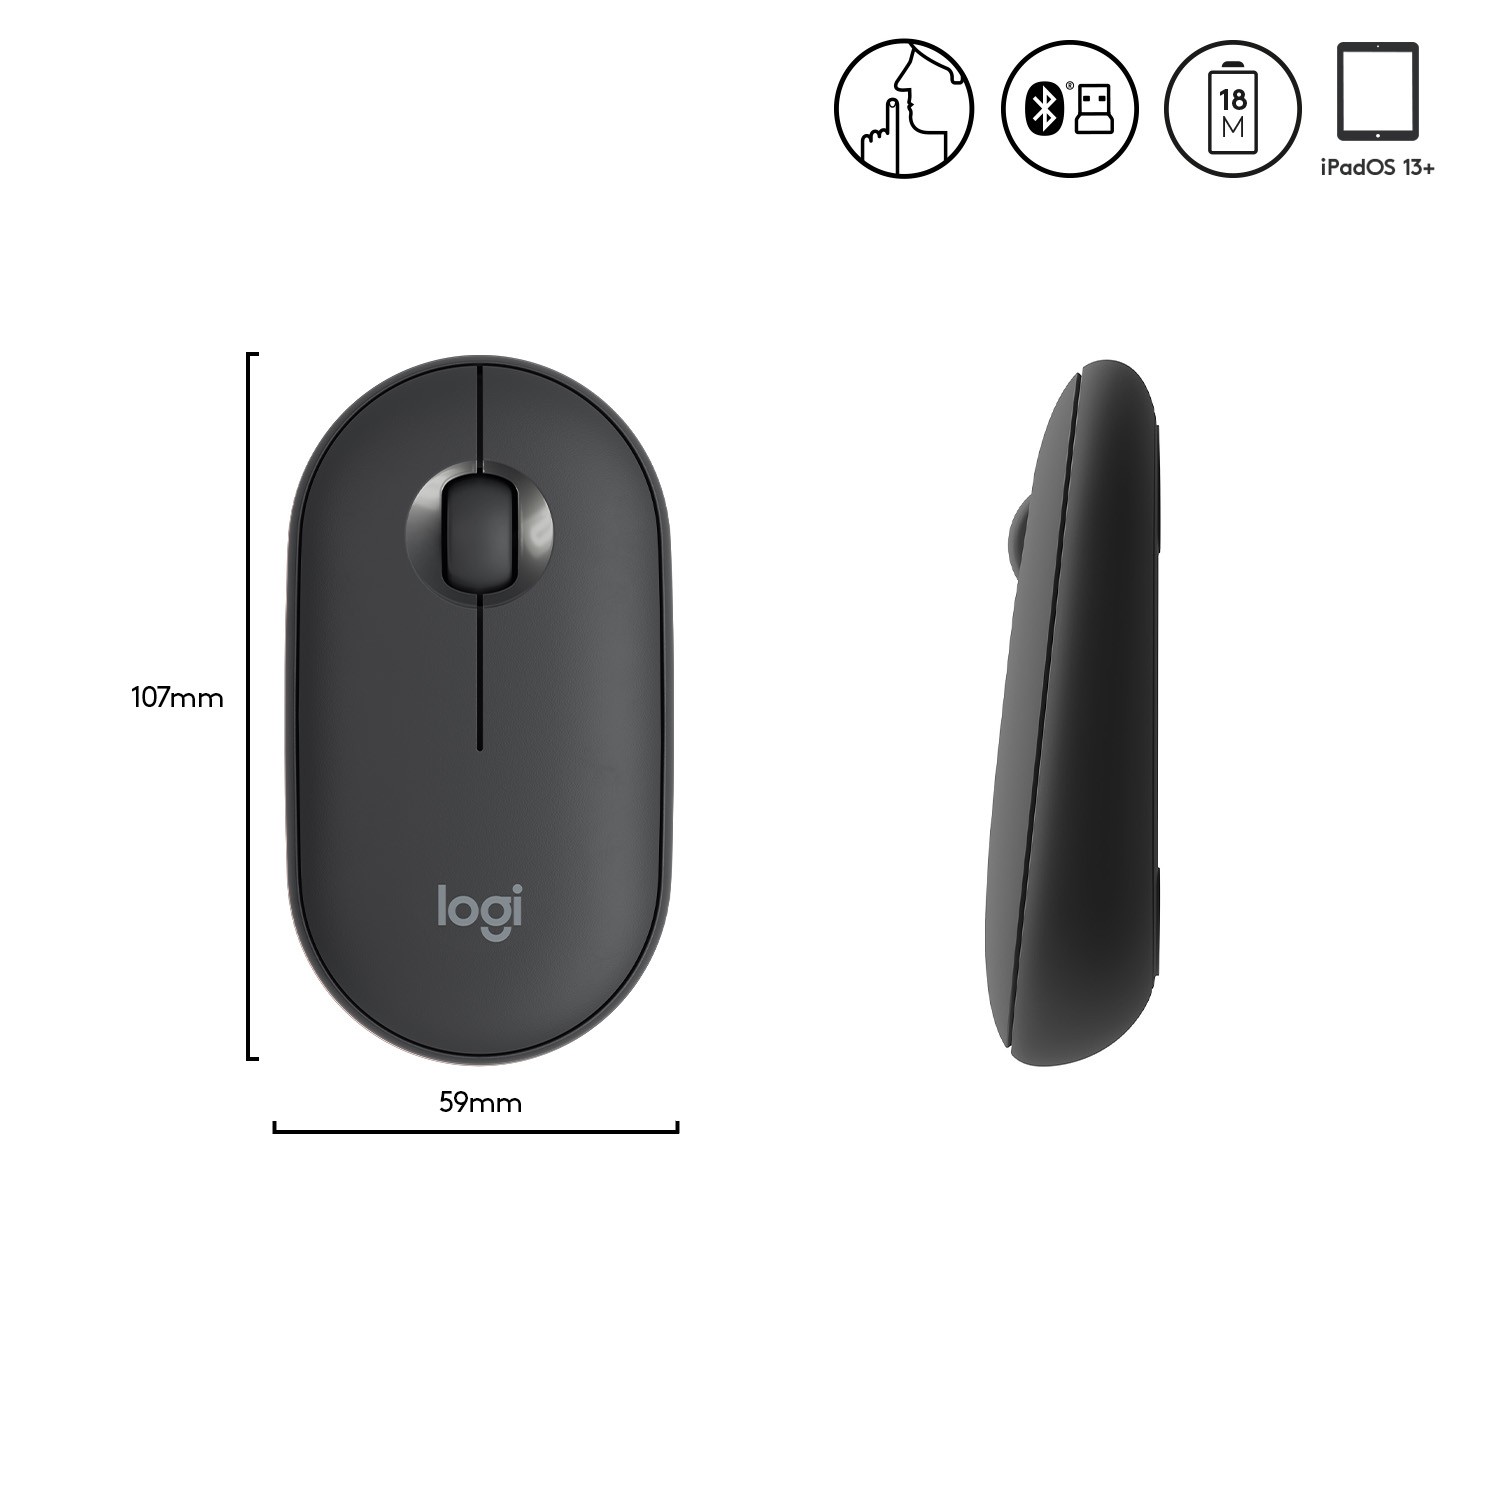 LOGITECH Pebble, mouse wireless con Bluetooth o ricevitore da 2,4 GHz, mouse  per computer con clic silenzioso per laptop, notebook, iPad, PC e Mac. Rosa